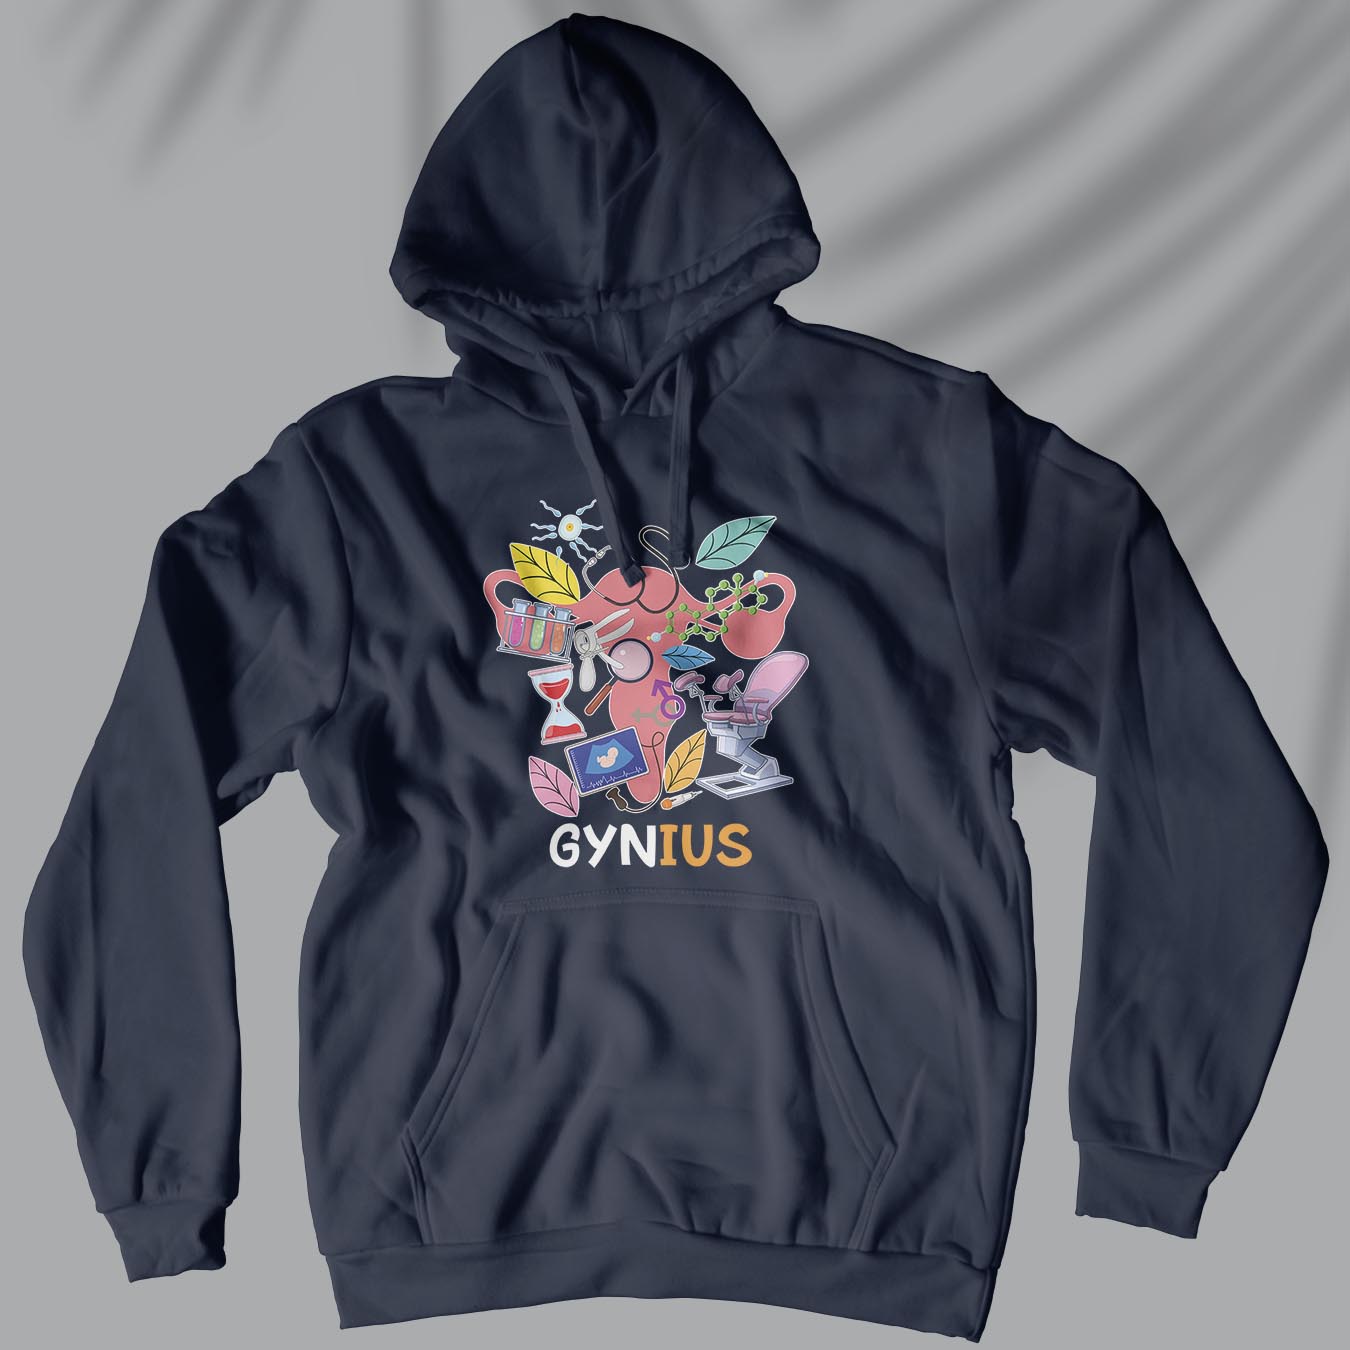 Gynius - Unisex Hoodie